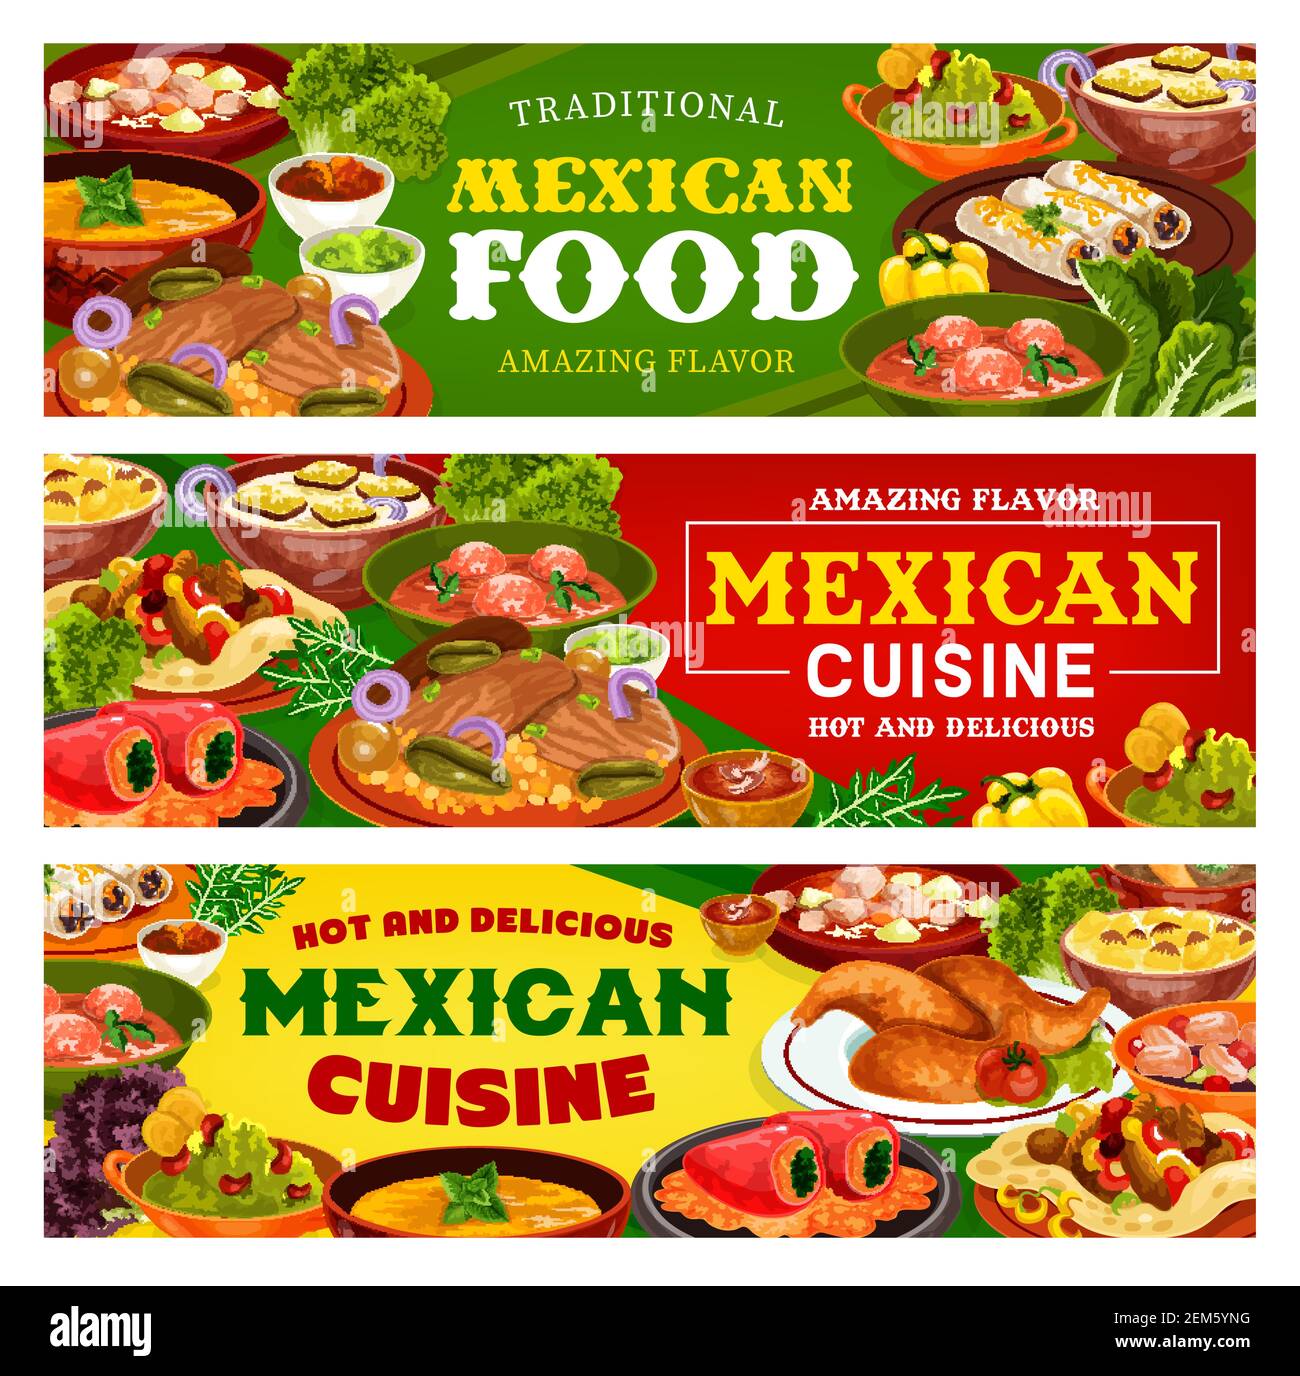 Mexikanische Lebensmittel Vektor Banner von Fleisch Gemüse Burritos und Fajitas mit Tomaten Salsa und Avocado Guacamole Saucen. Estofado Eintopf, gefüllte Paprika und Stock Vektor